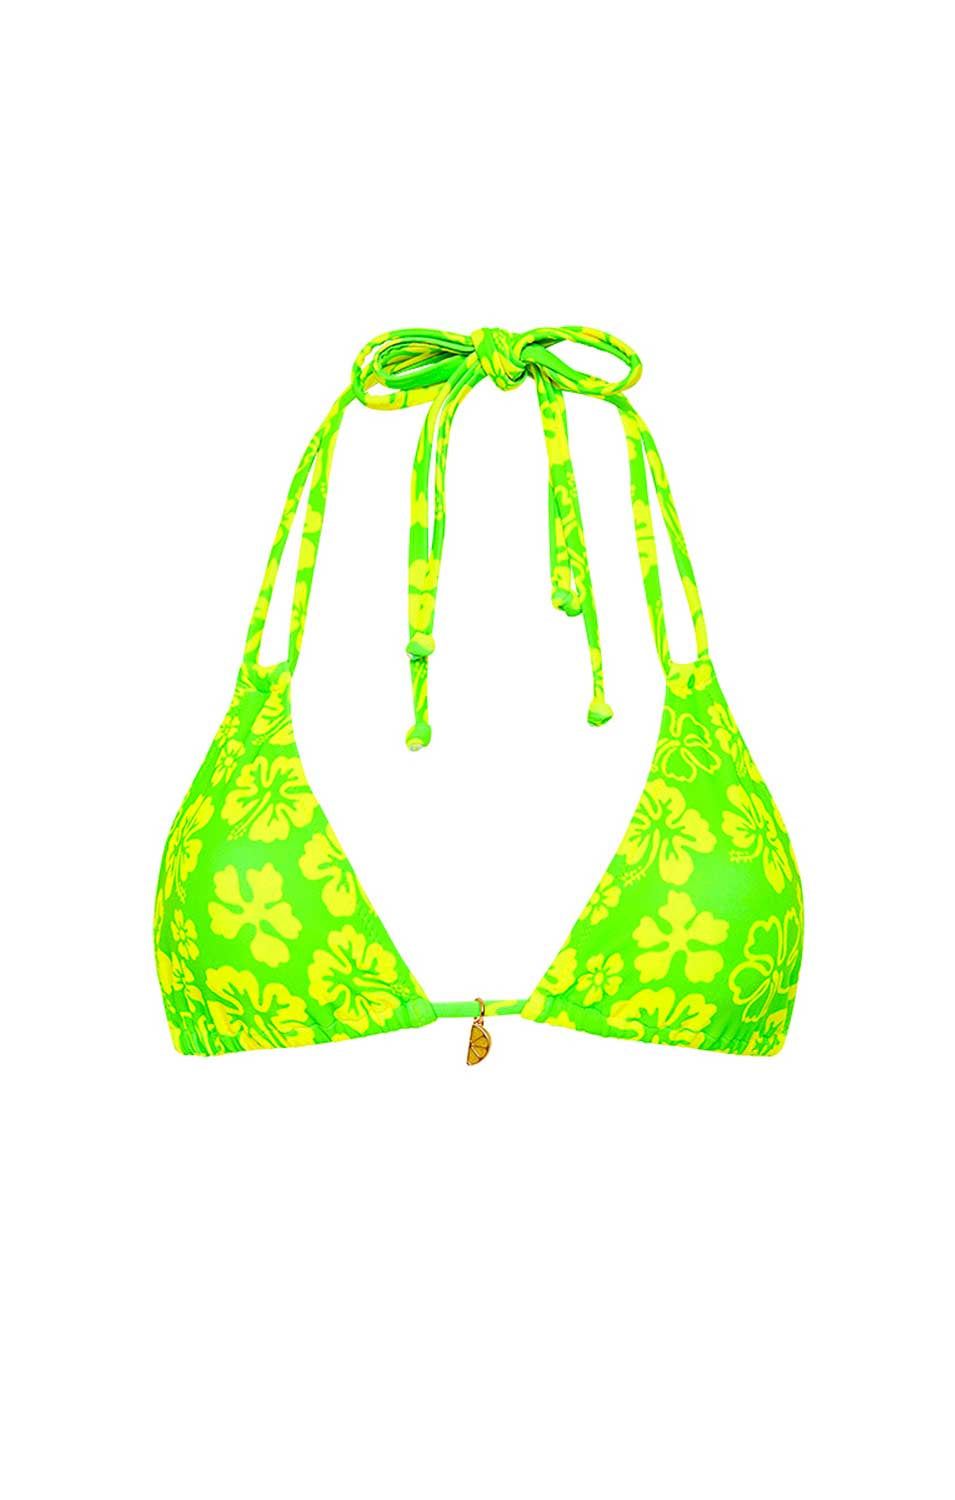 Kulani Kinis: Aloha Lime Halter Bralette Bikini Top